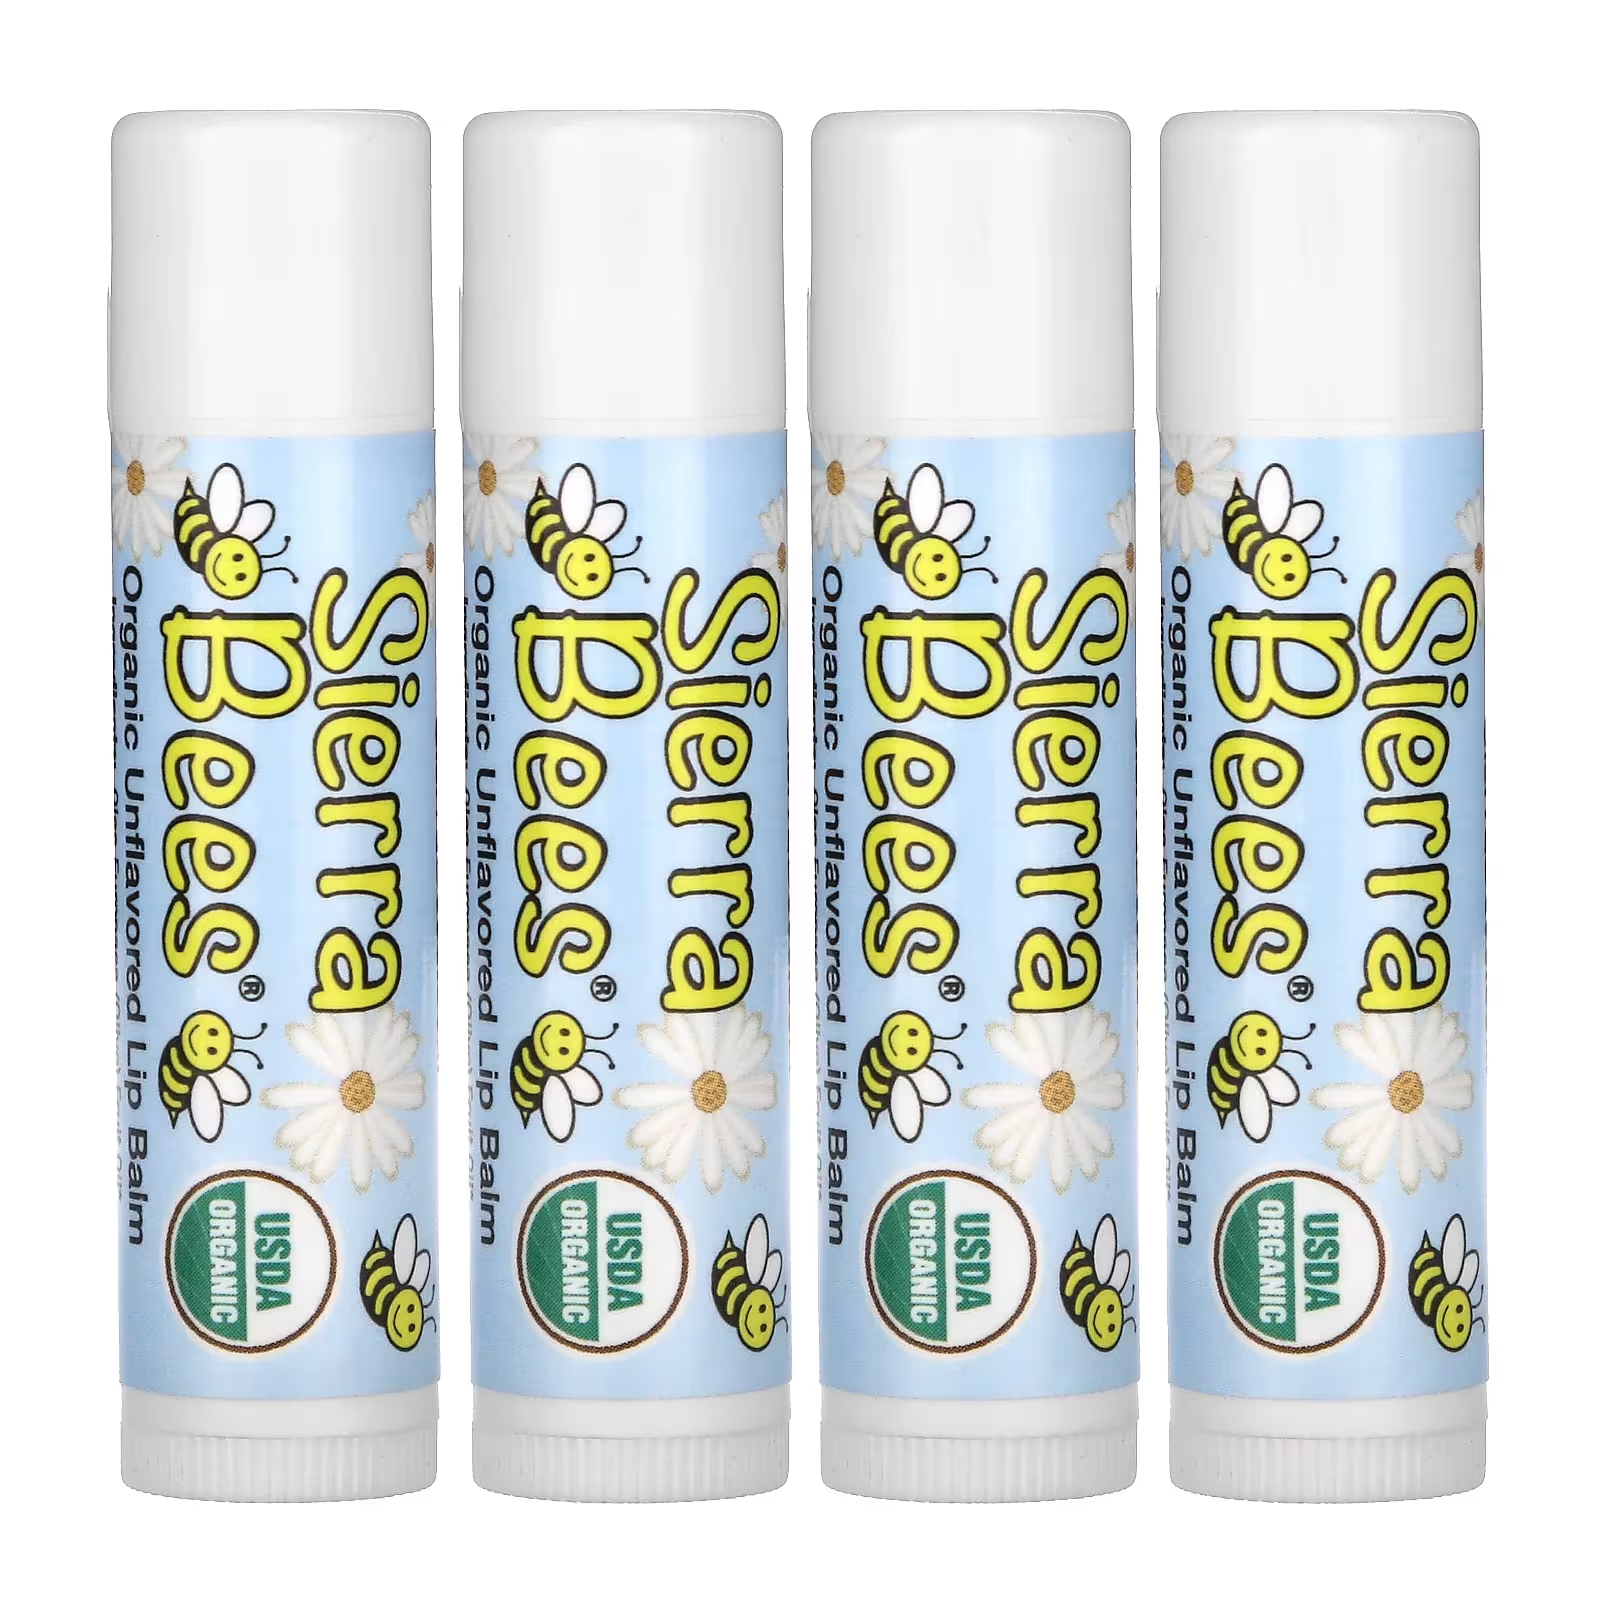 Органические бальзамы для губ Sierra Bees, 4 упаковки по 4,25 г sierra bees набор органических бальзамов для губ 8 в упаковке 4 25 г 15 унций каждый